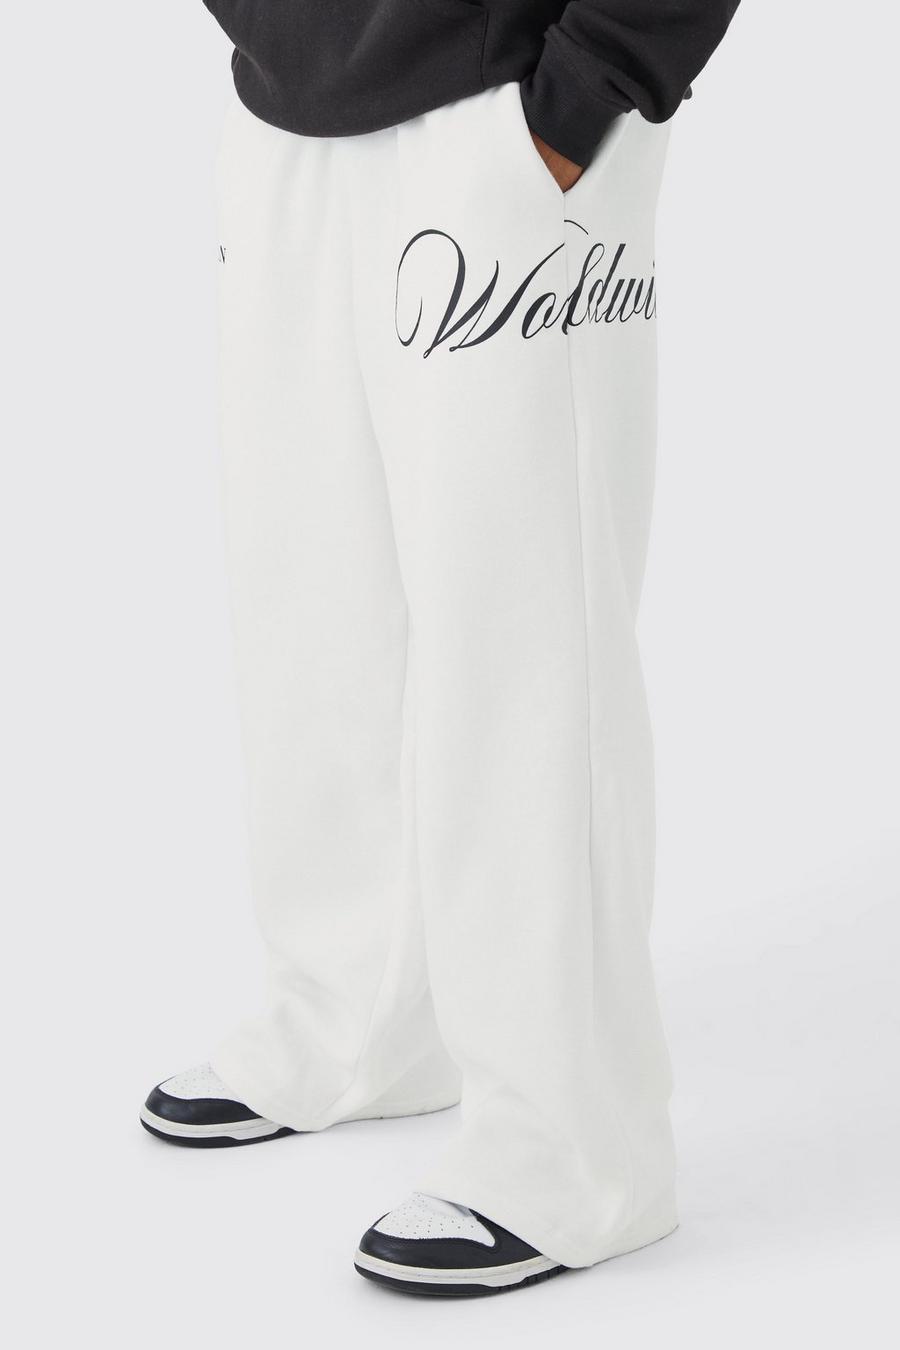 Pantalón deportivo de pernera ancha grueso con cordón elástico, Ecru bianco